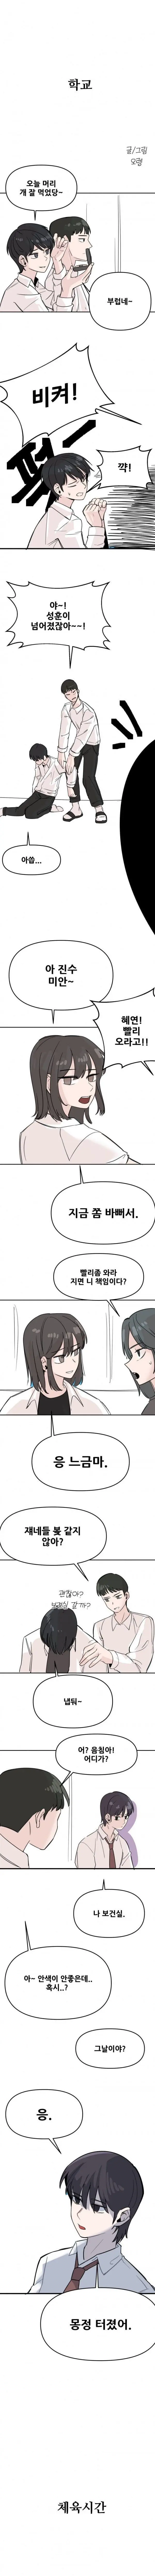 남녀역전의 세계 만화 | mbong.kr 엠봉